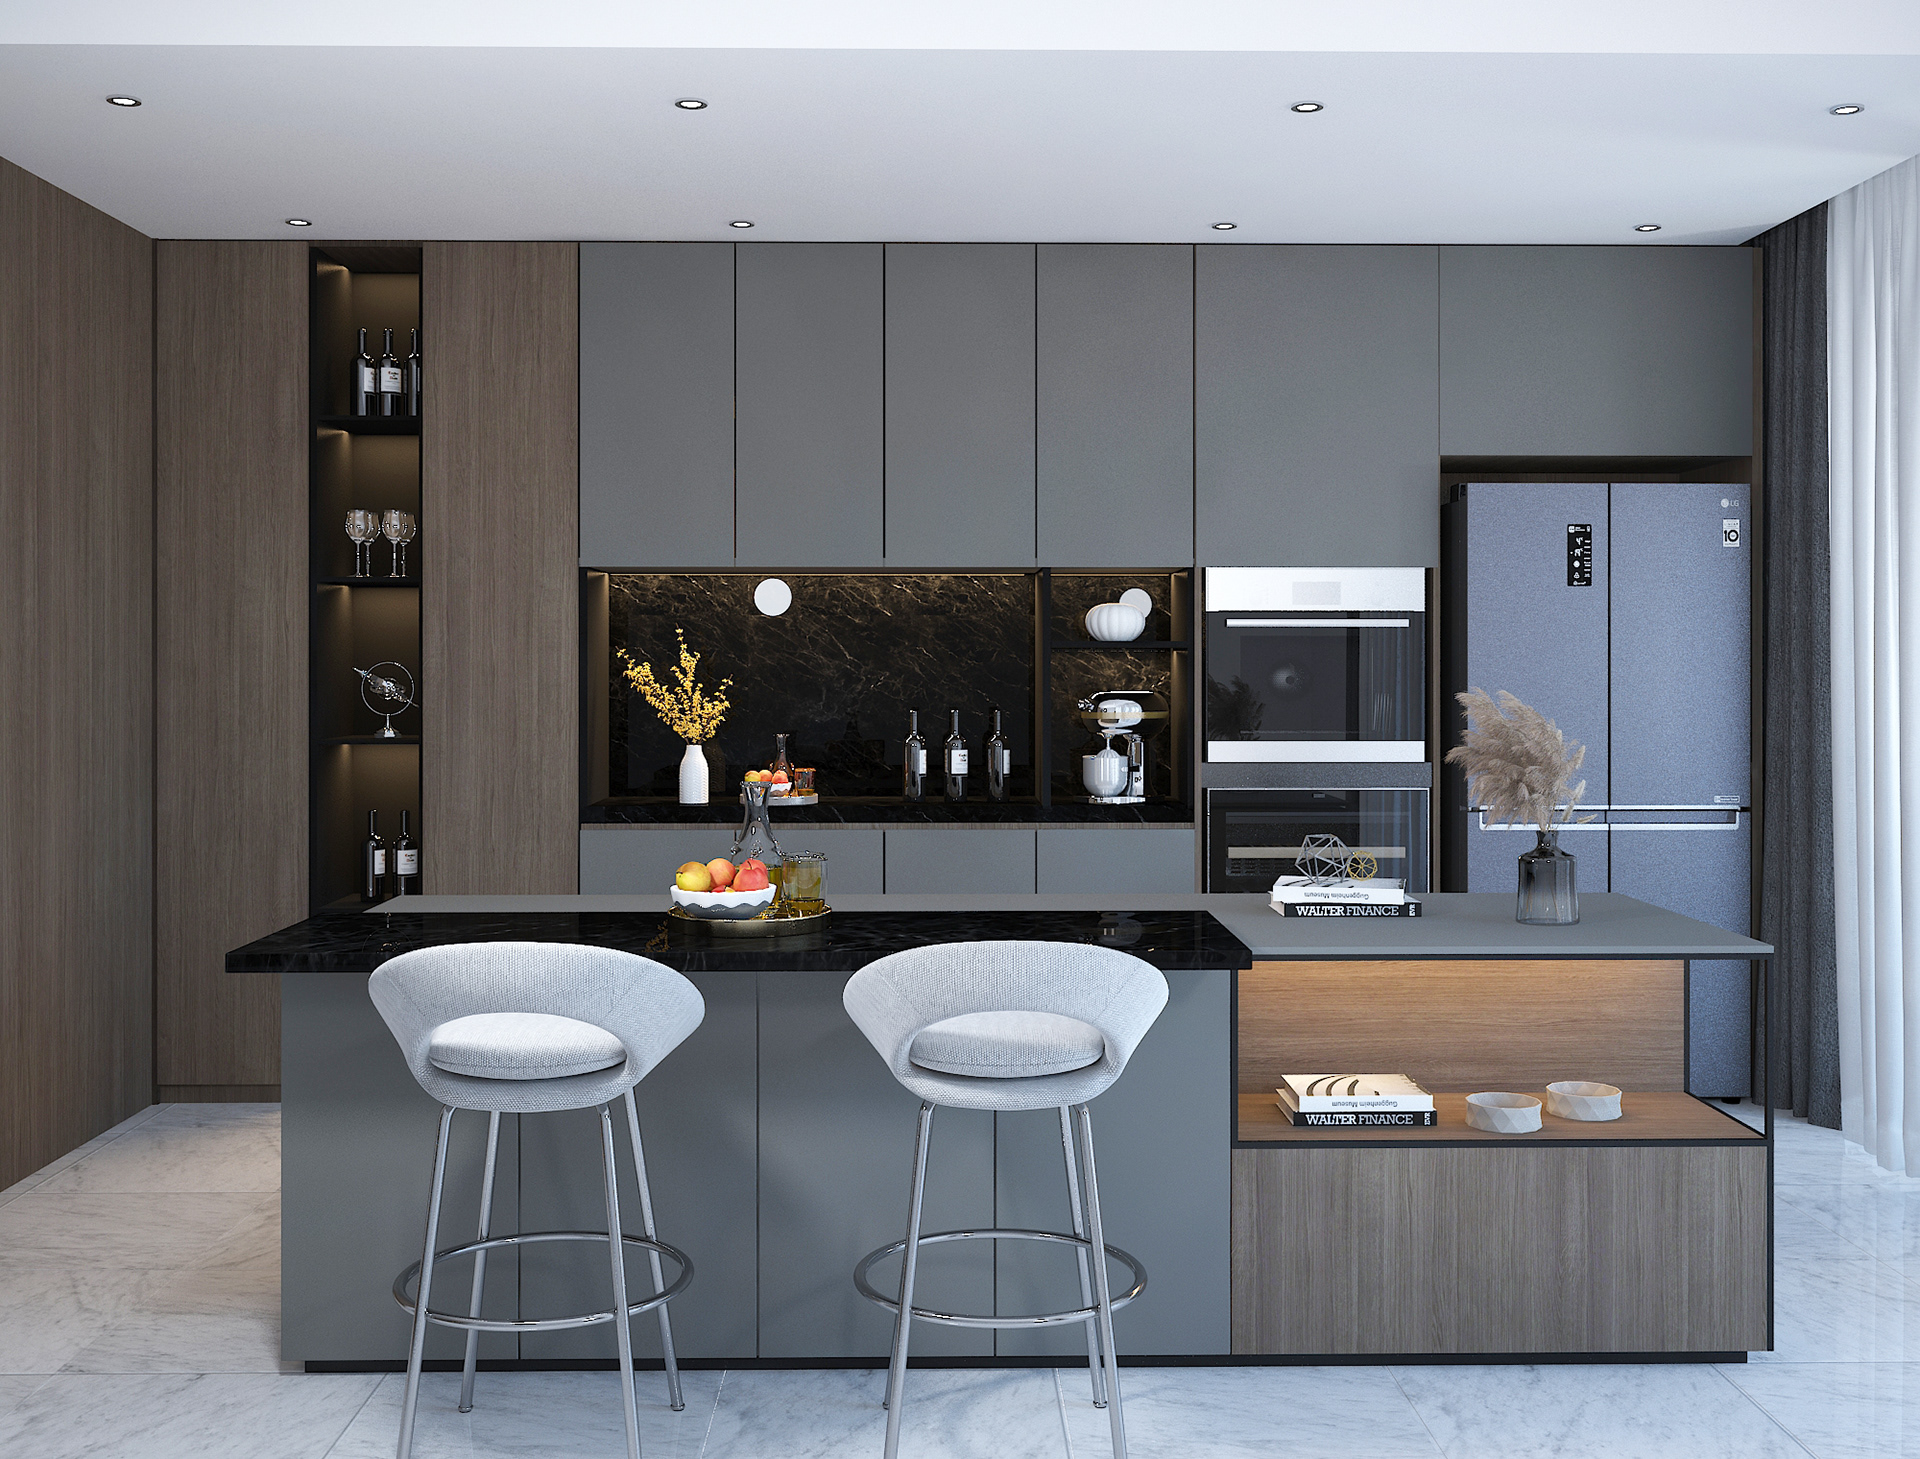 Modern Kitchen Interior Design on Behance